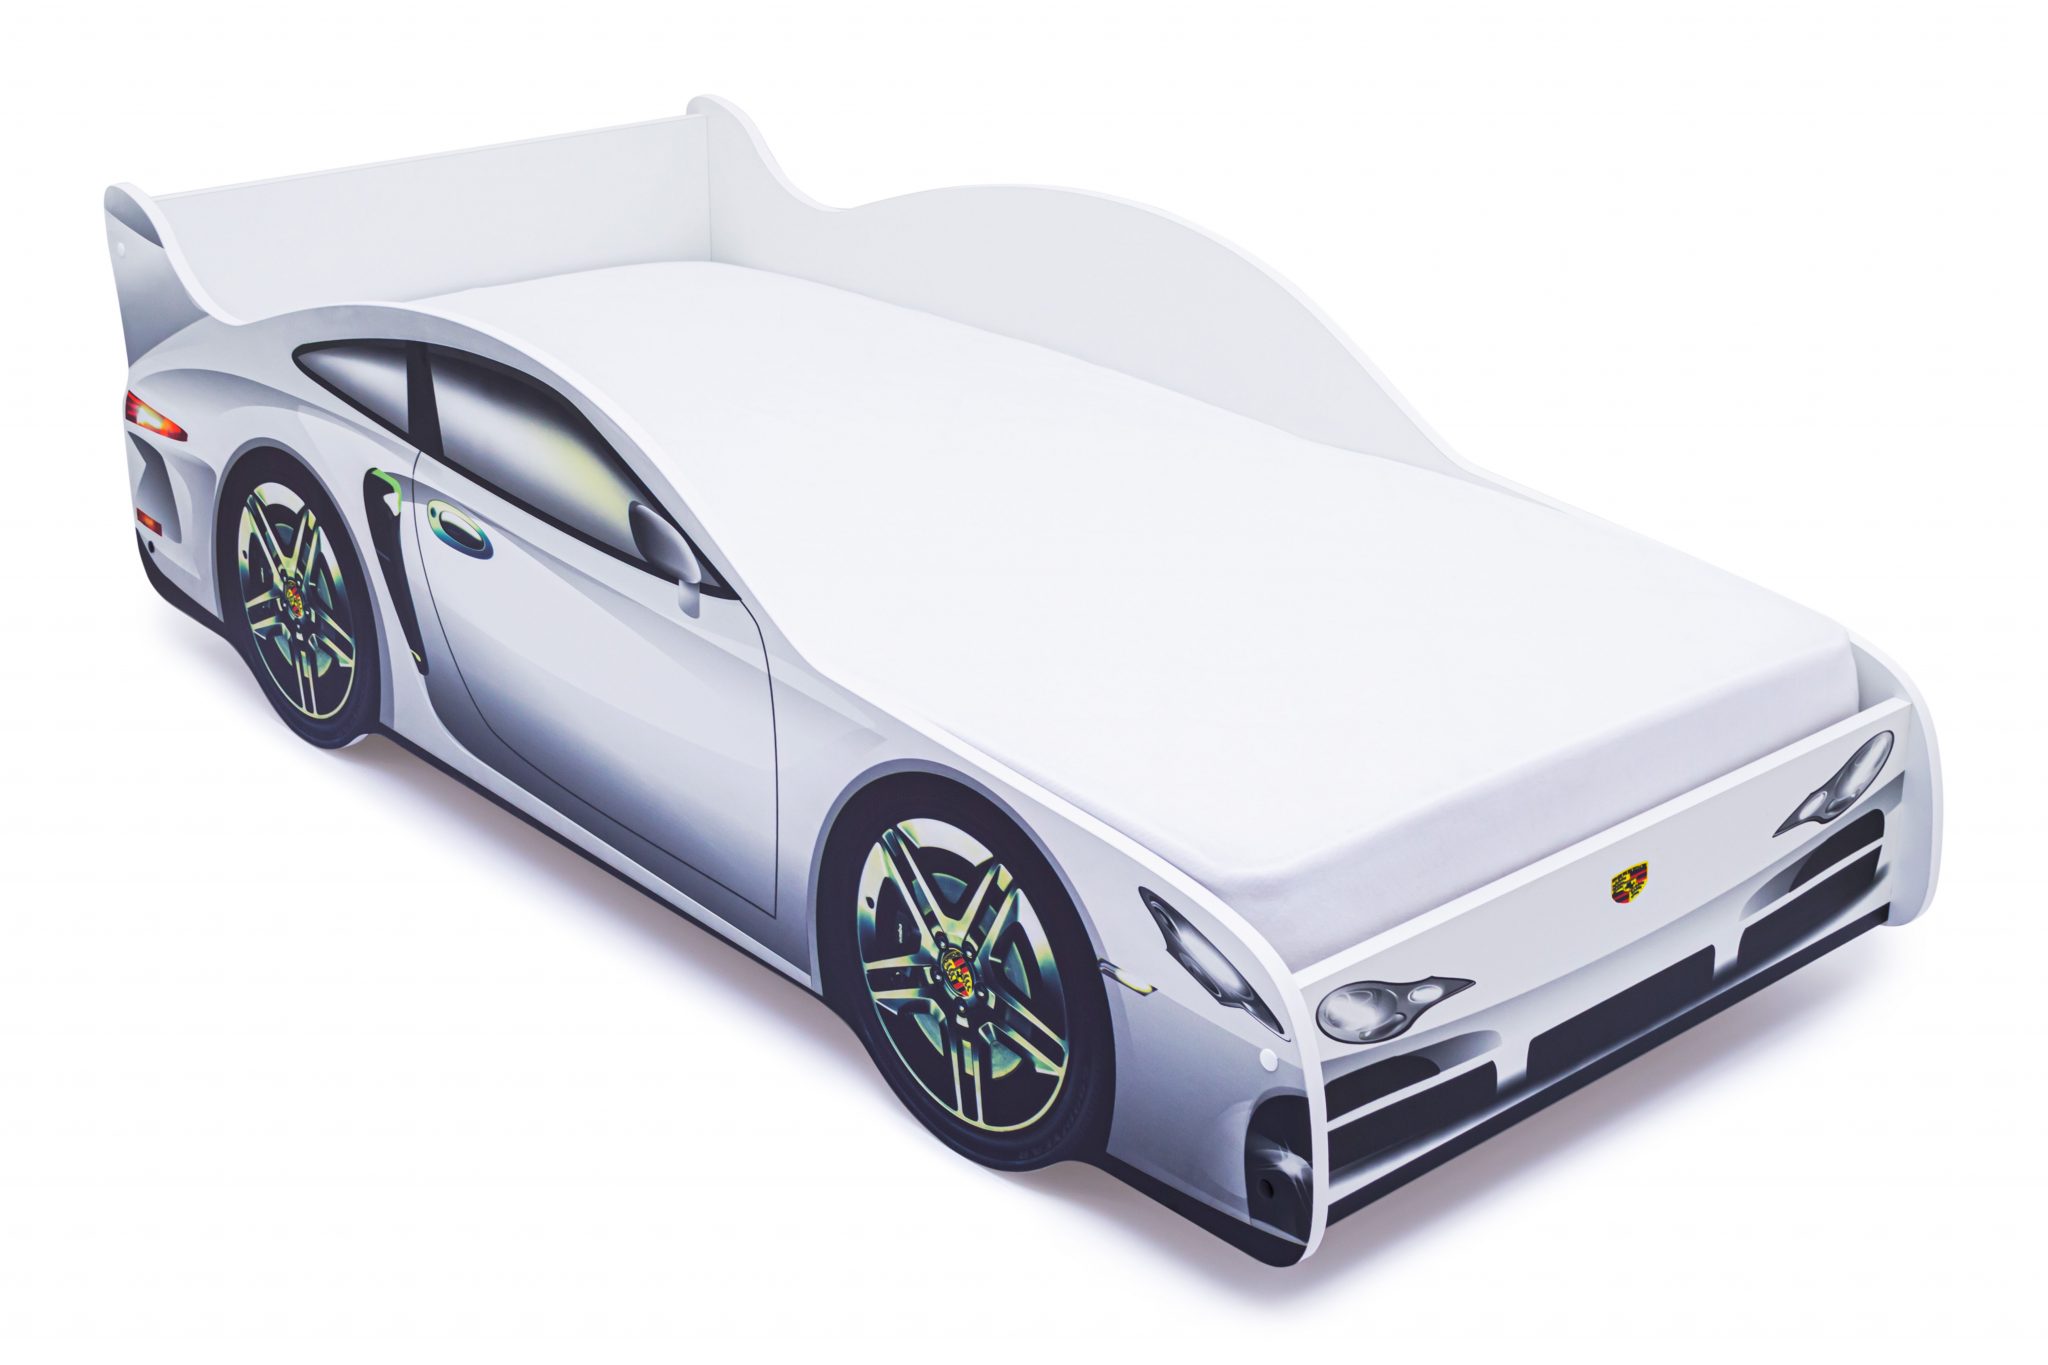 Кровать машина Бельмарко Lamborghini